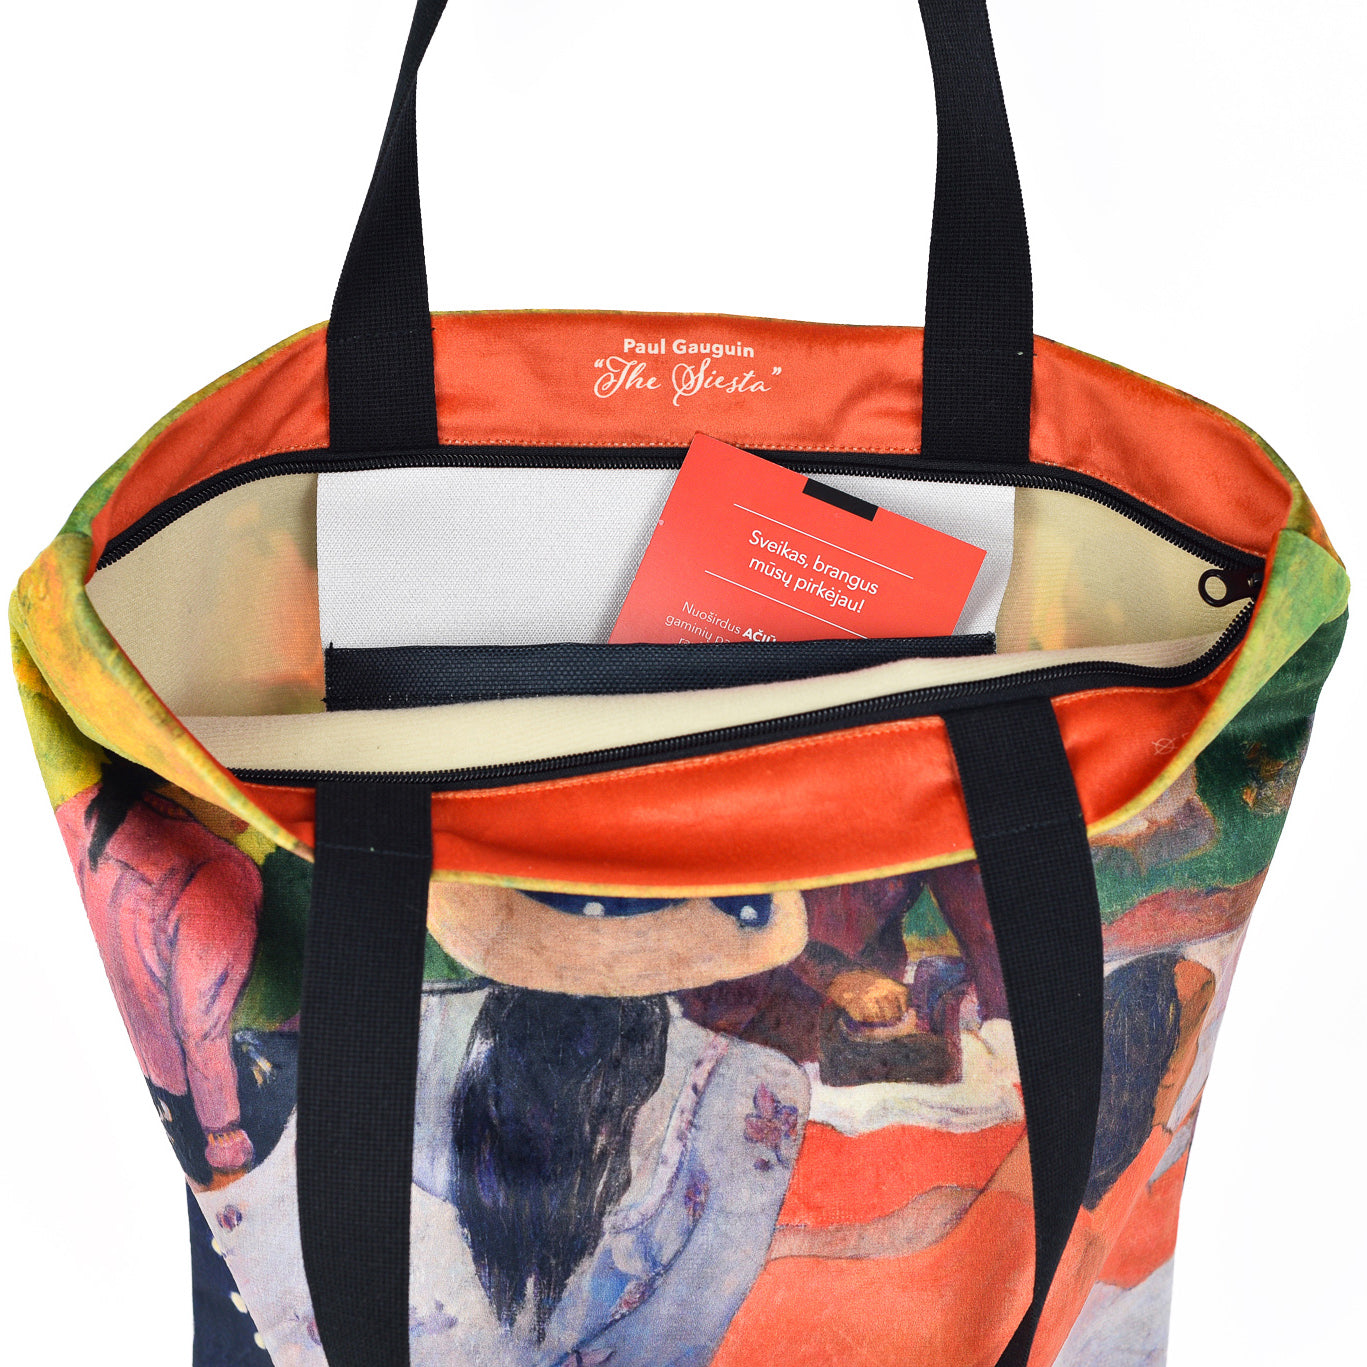 Pirkinių krepšys Paul Gauguin "The Siesta"